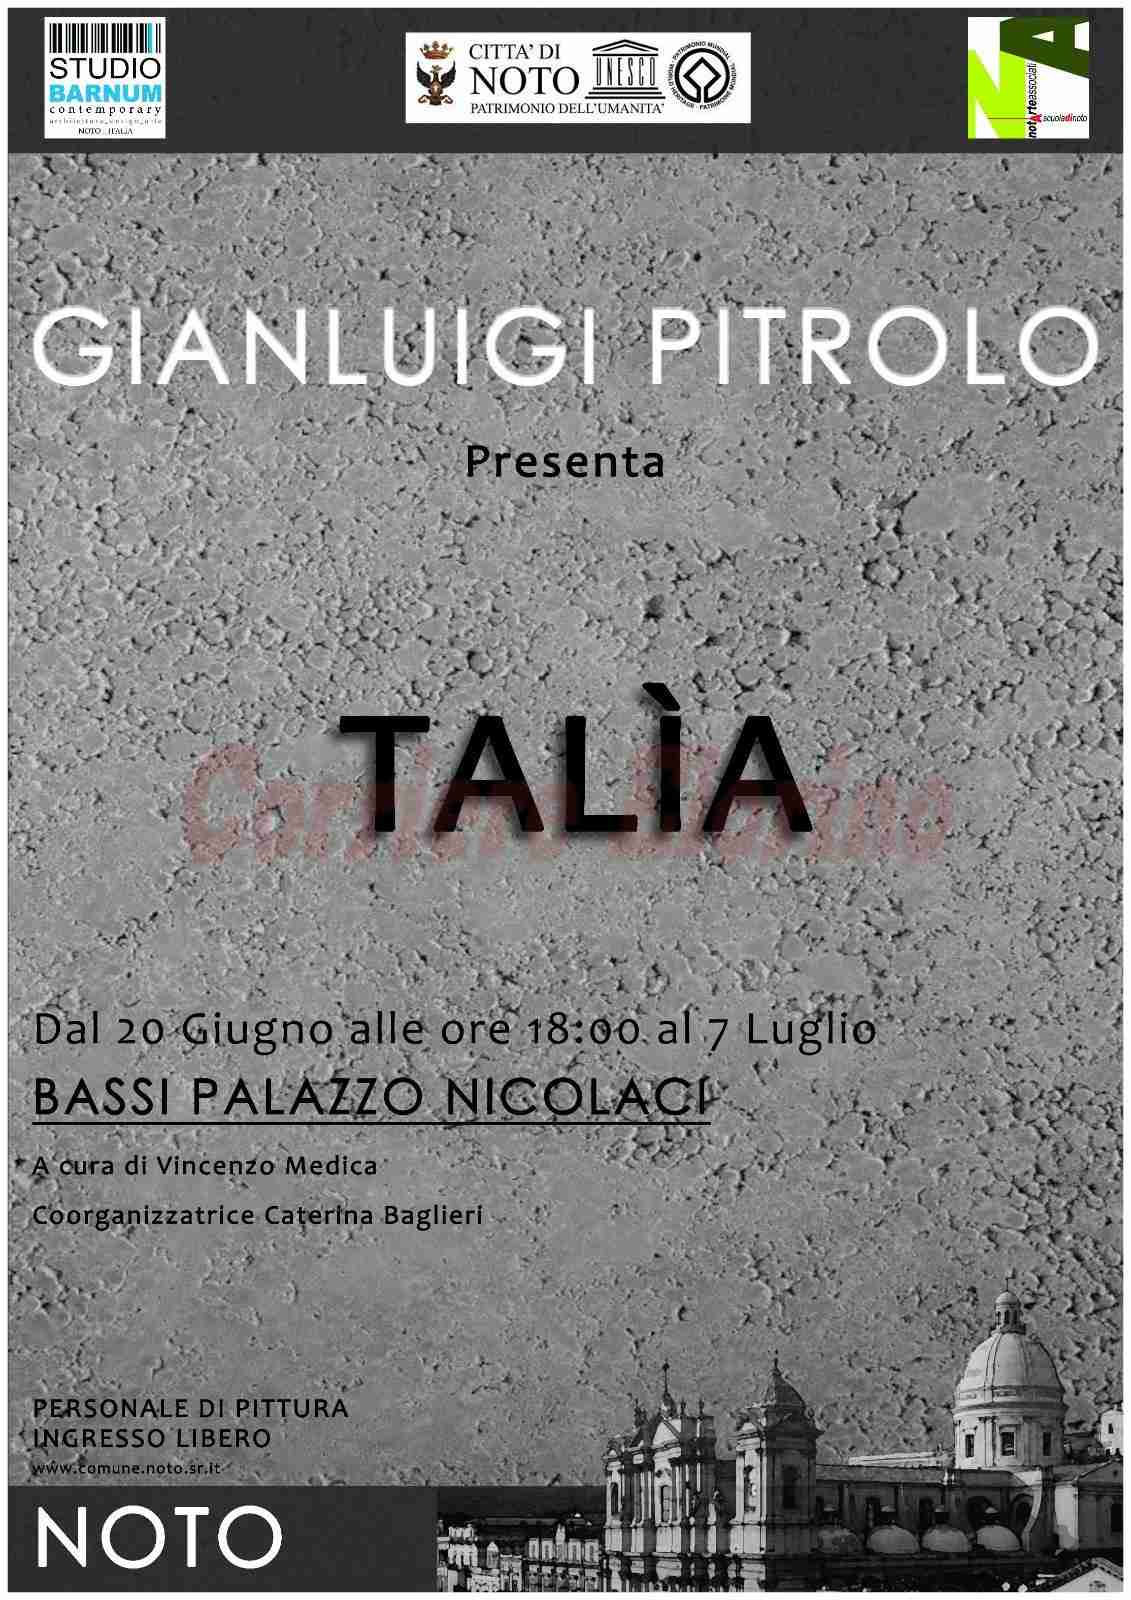 Talìa: la mostra dell’artista Pitrolo dal 20 giugno al Palazzo Nicolaci di Noto